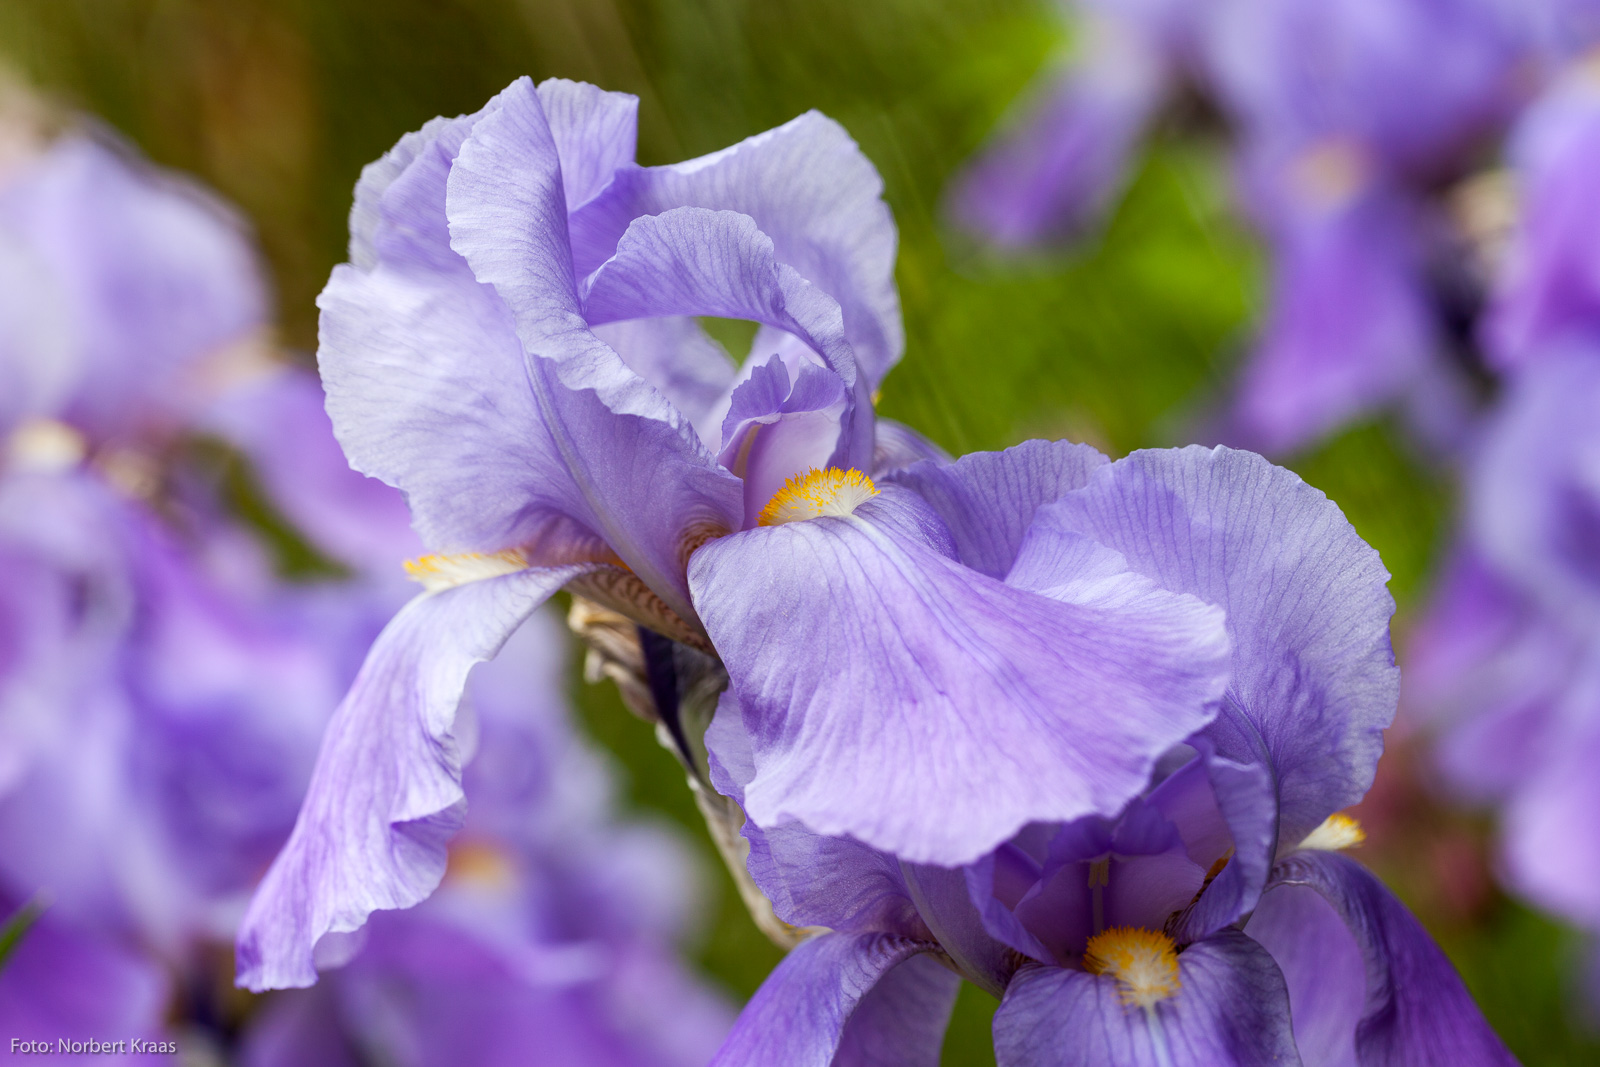 So viel Latein muss sein: Iris germanica, u.a. Echte Schwertlilie genannt, gehört zur Gruppe der Iris barbata (Bart-Iris)